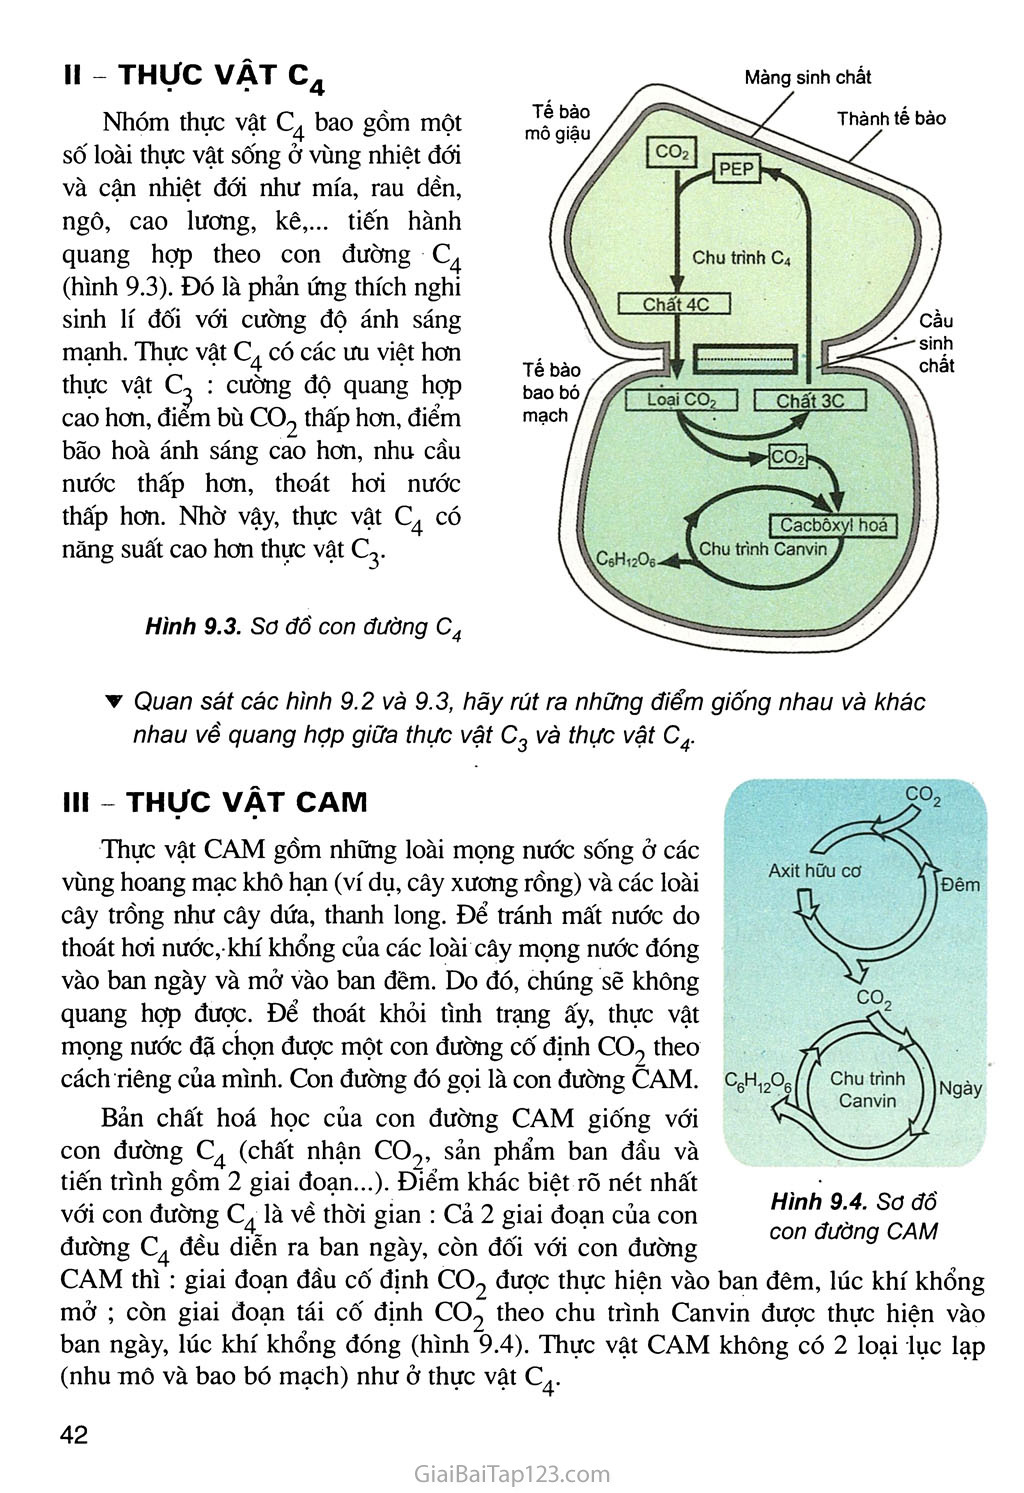 Bài 9. Quang hợp ở các nhóm thực vật C3, C4 và CAM trang 3